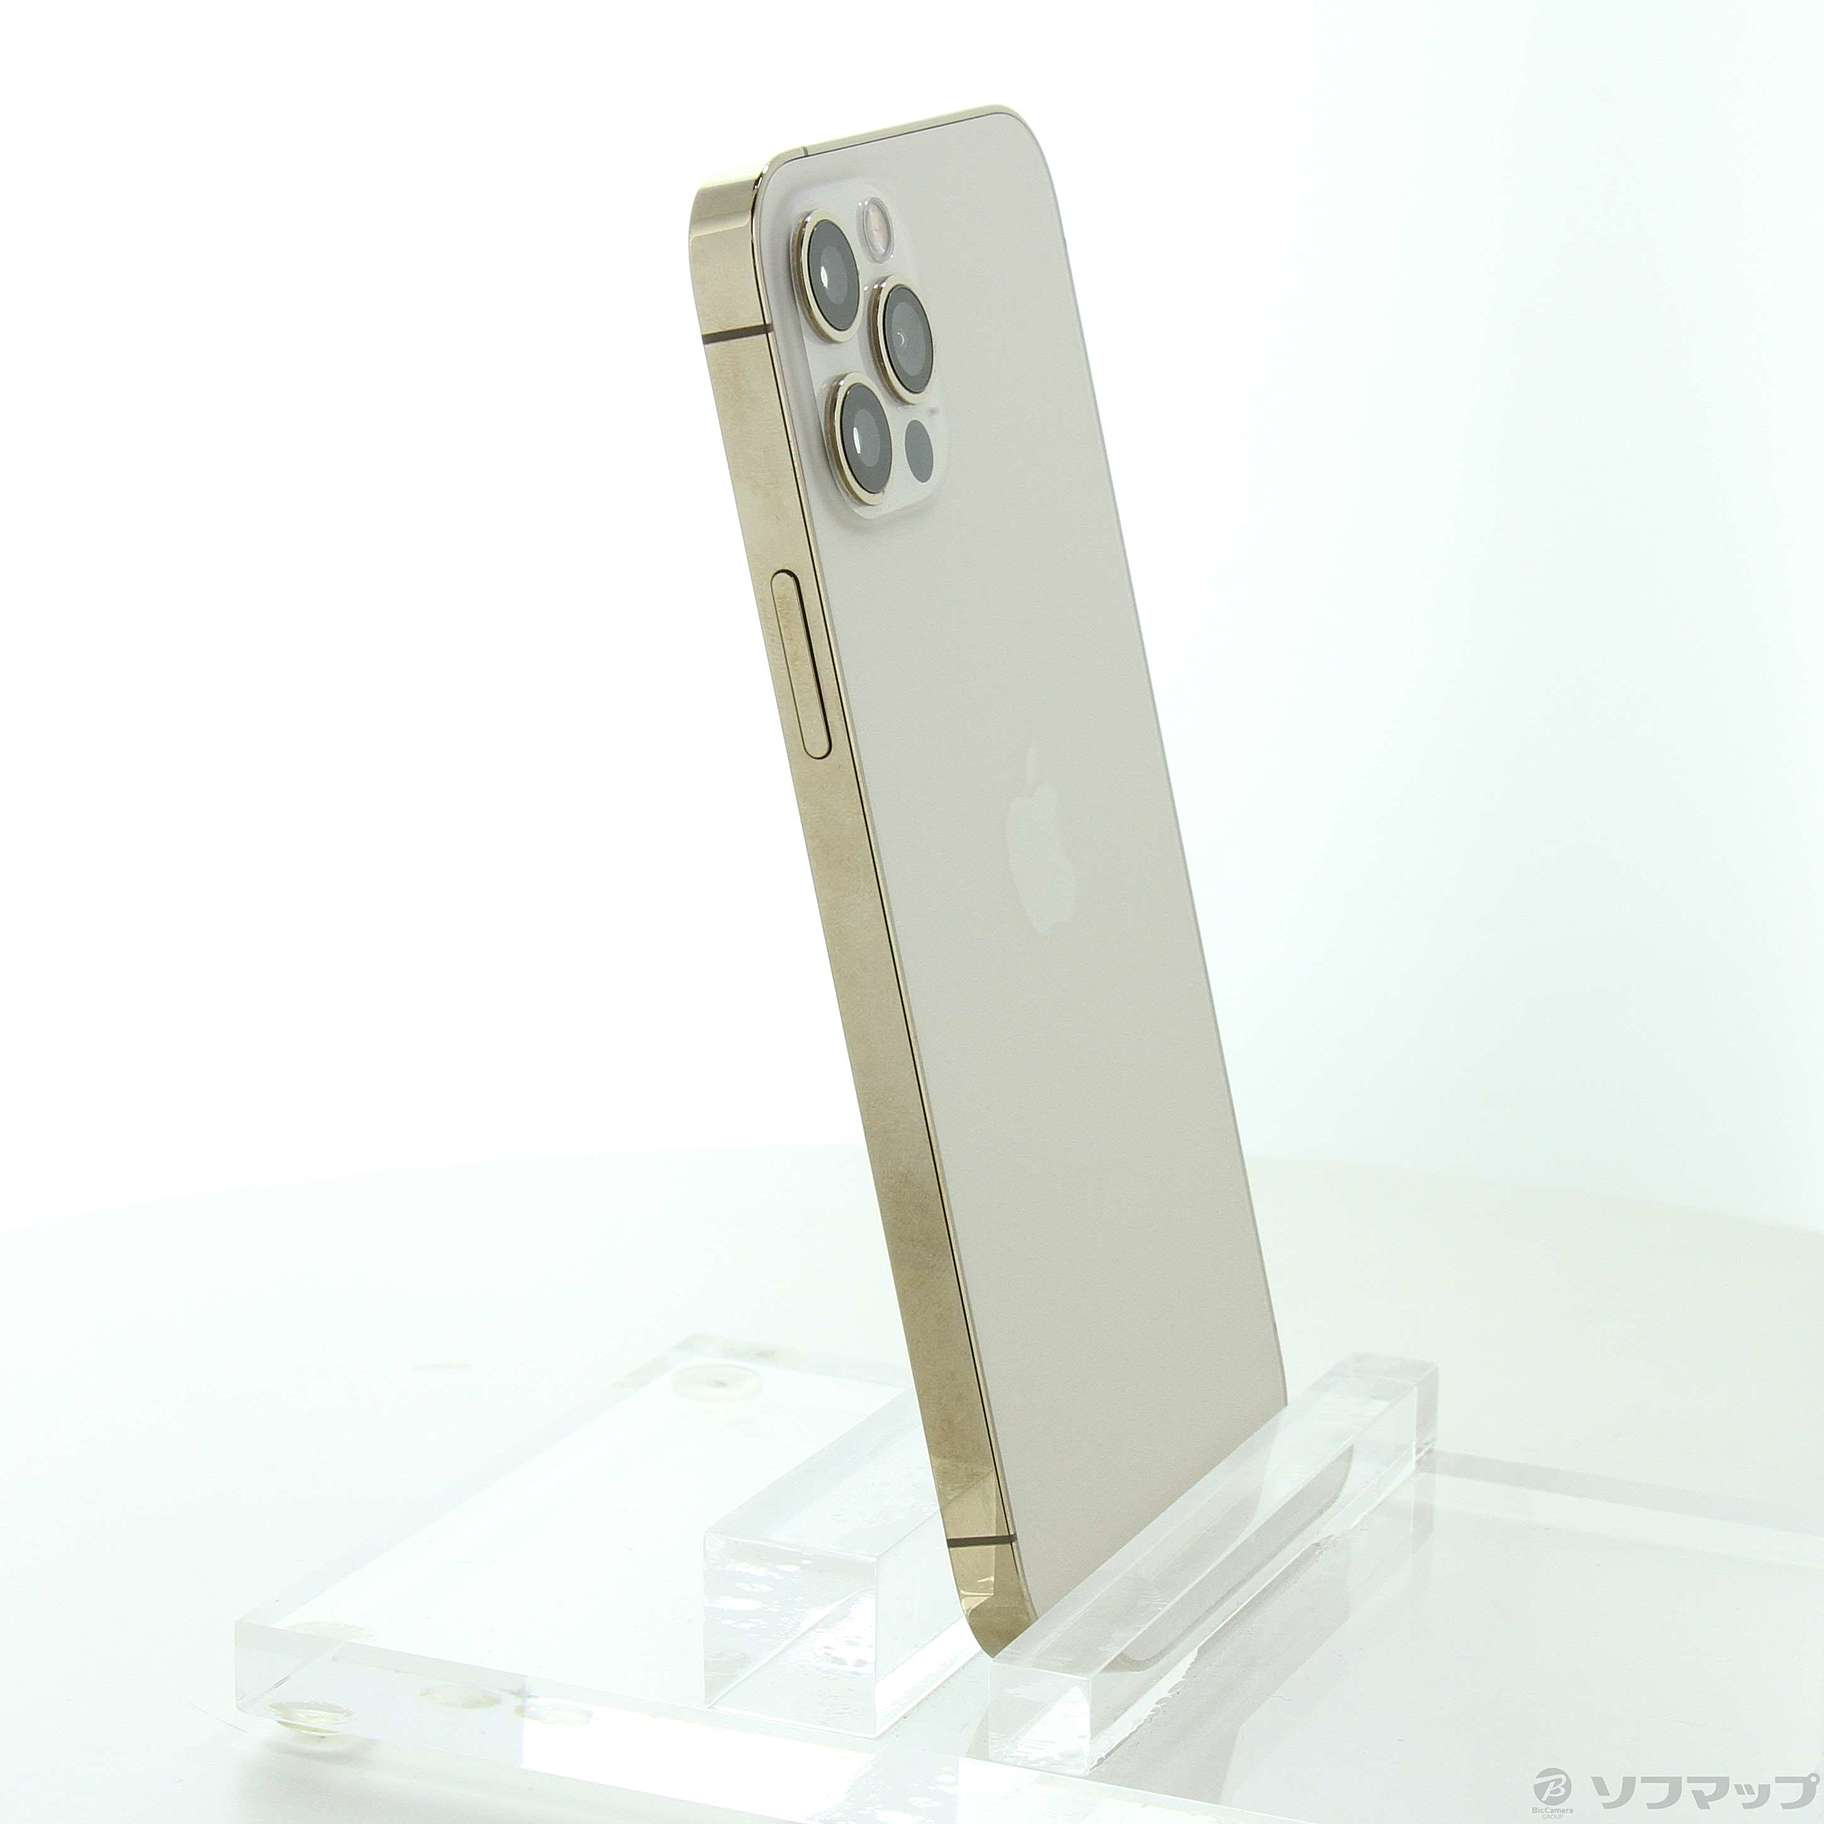 iPhone 12 pro ゴールド 128 GB Softbank【値下げ】71000で購入したい 